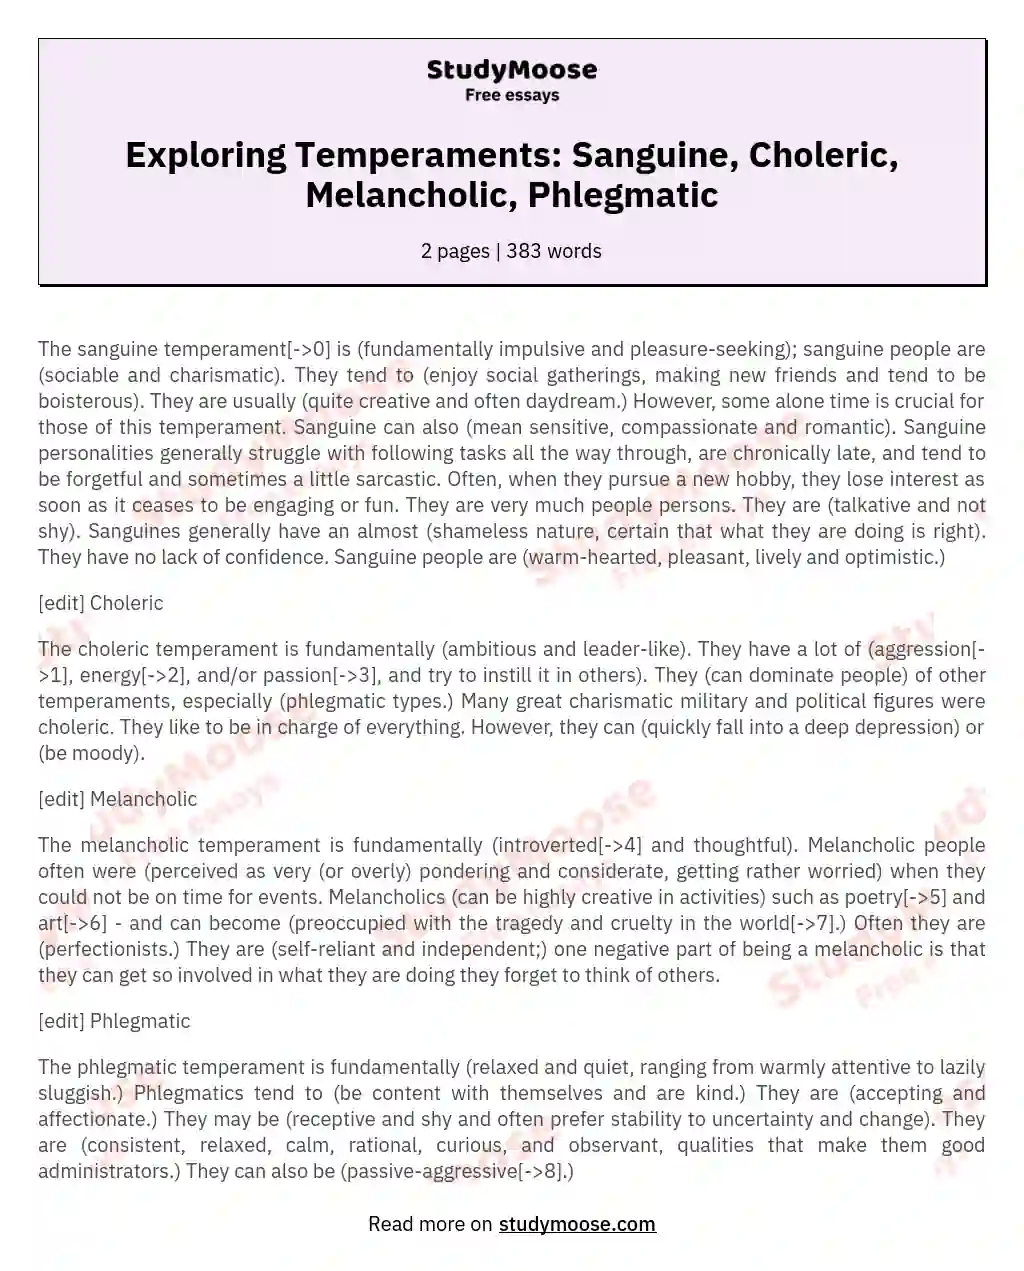 Exploring Temperaments: Sanguine, Choleric, Melancholic, Phlegmatic essay